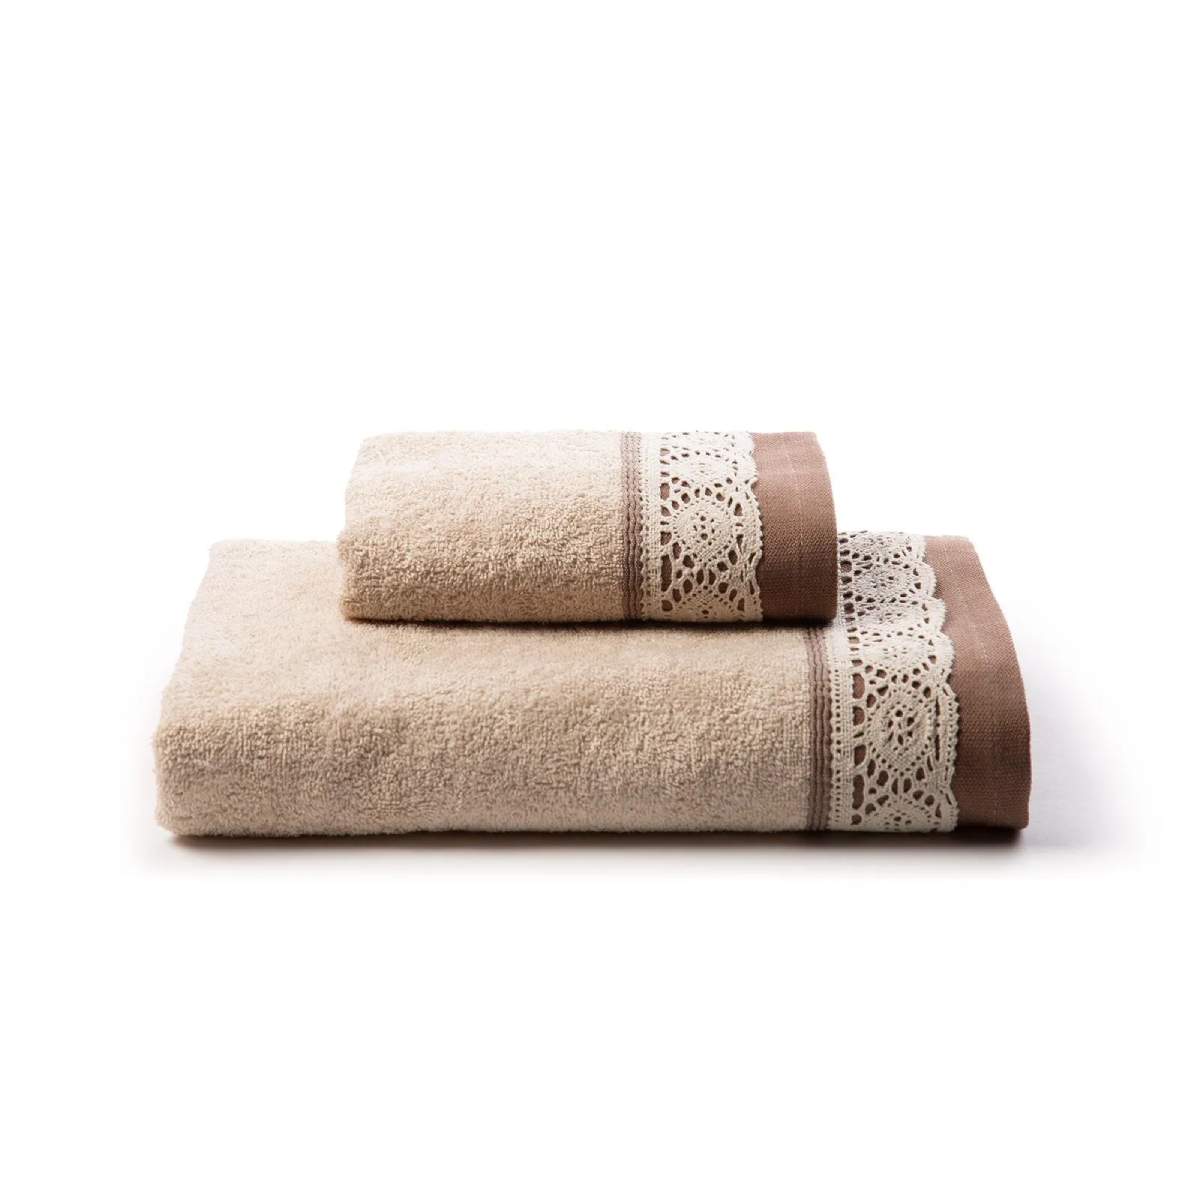 Coppia asciugamani Caleffi Sofy in spugna di puro cotone. Asciugamano e ospite, in tinta unita, sono impreziositi da bordo in pizzo. Colore panna beige